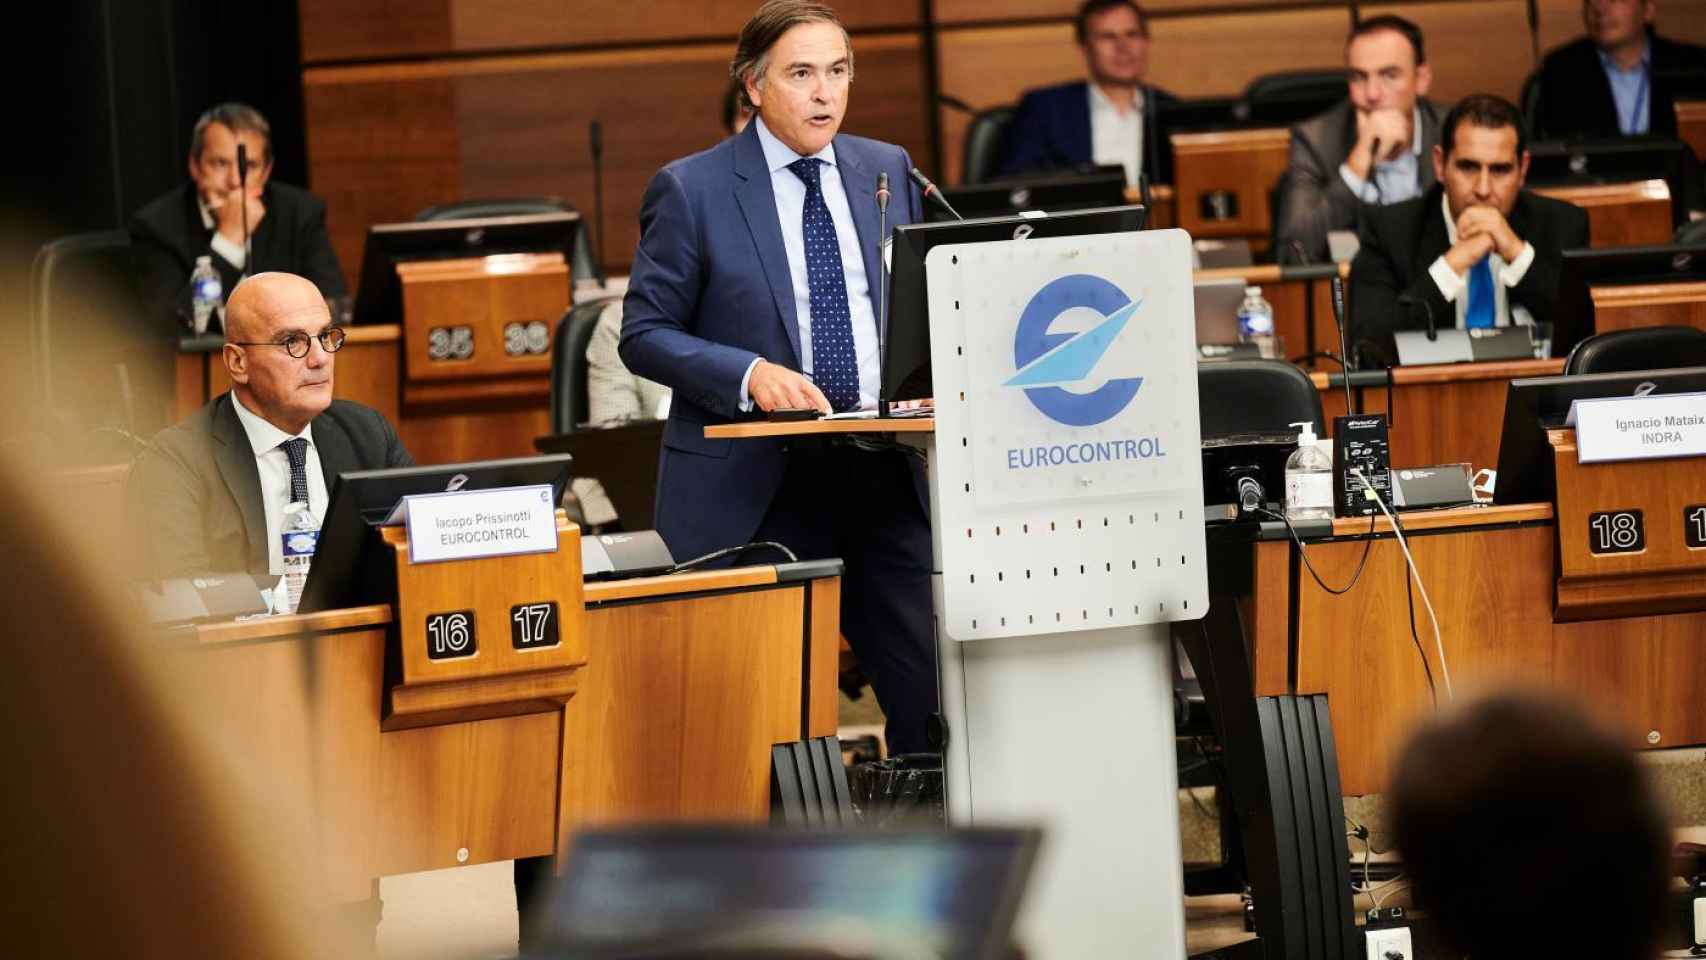 Ignacio Mataix, en una reunión de Eurocontrol